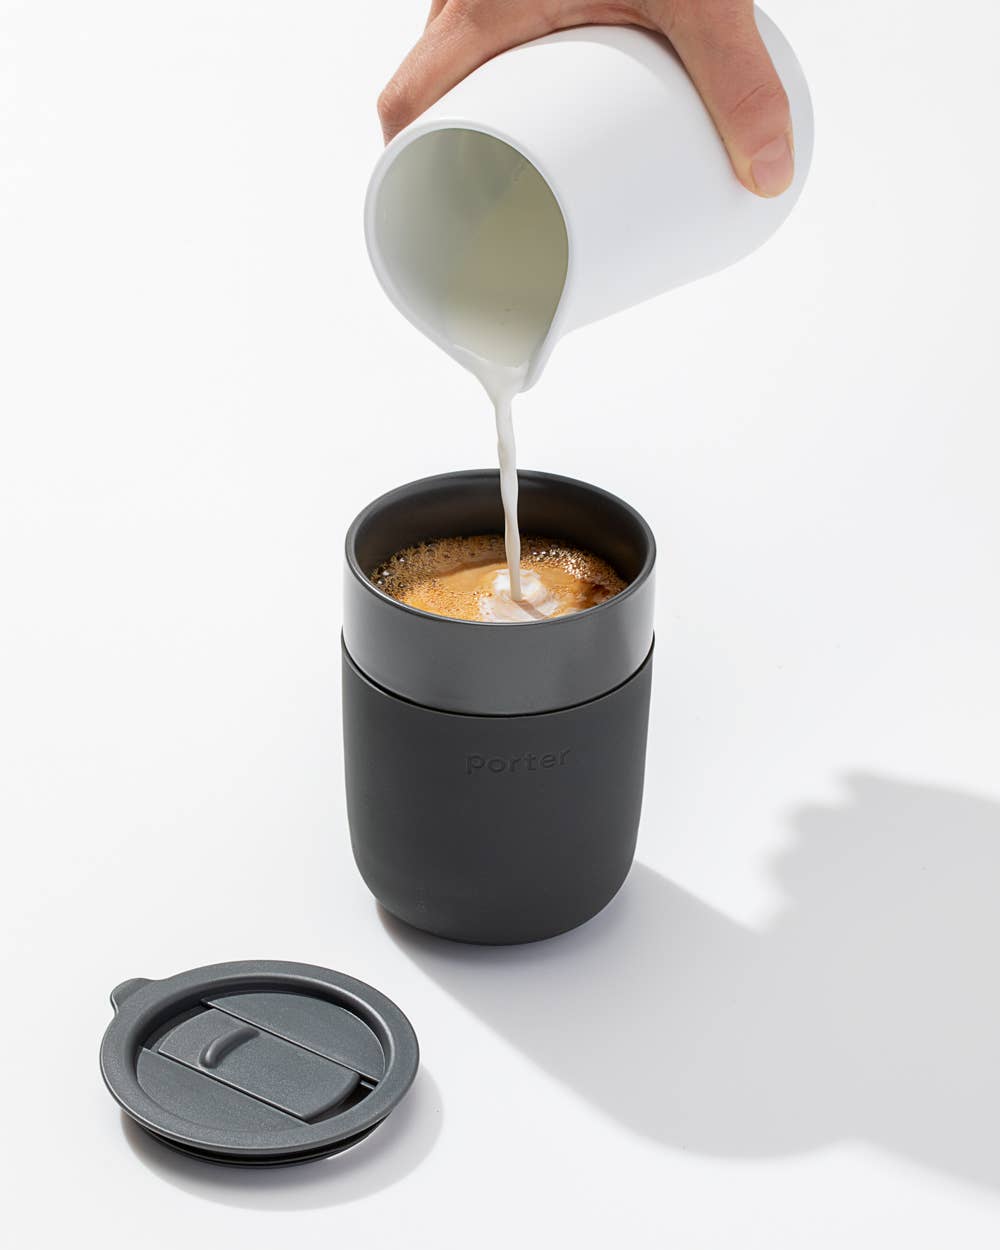 Porter Ceramic Mug 12oz - Charcoal